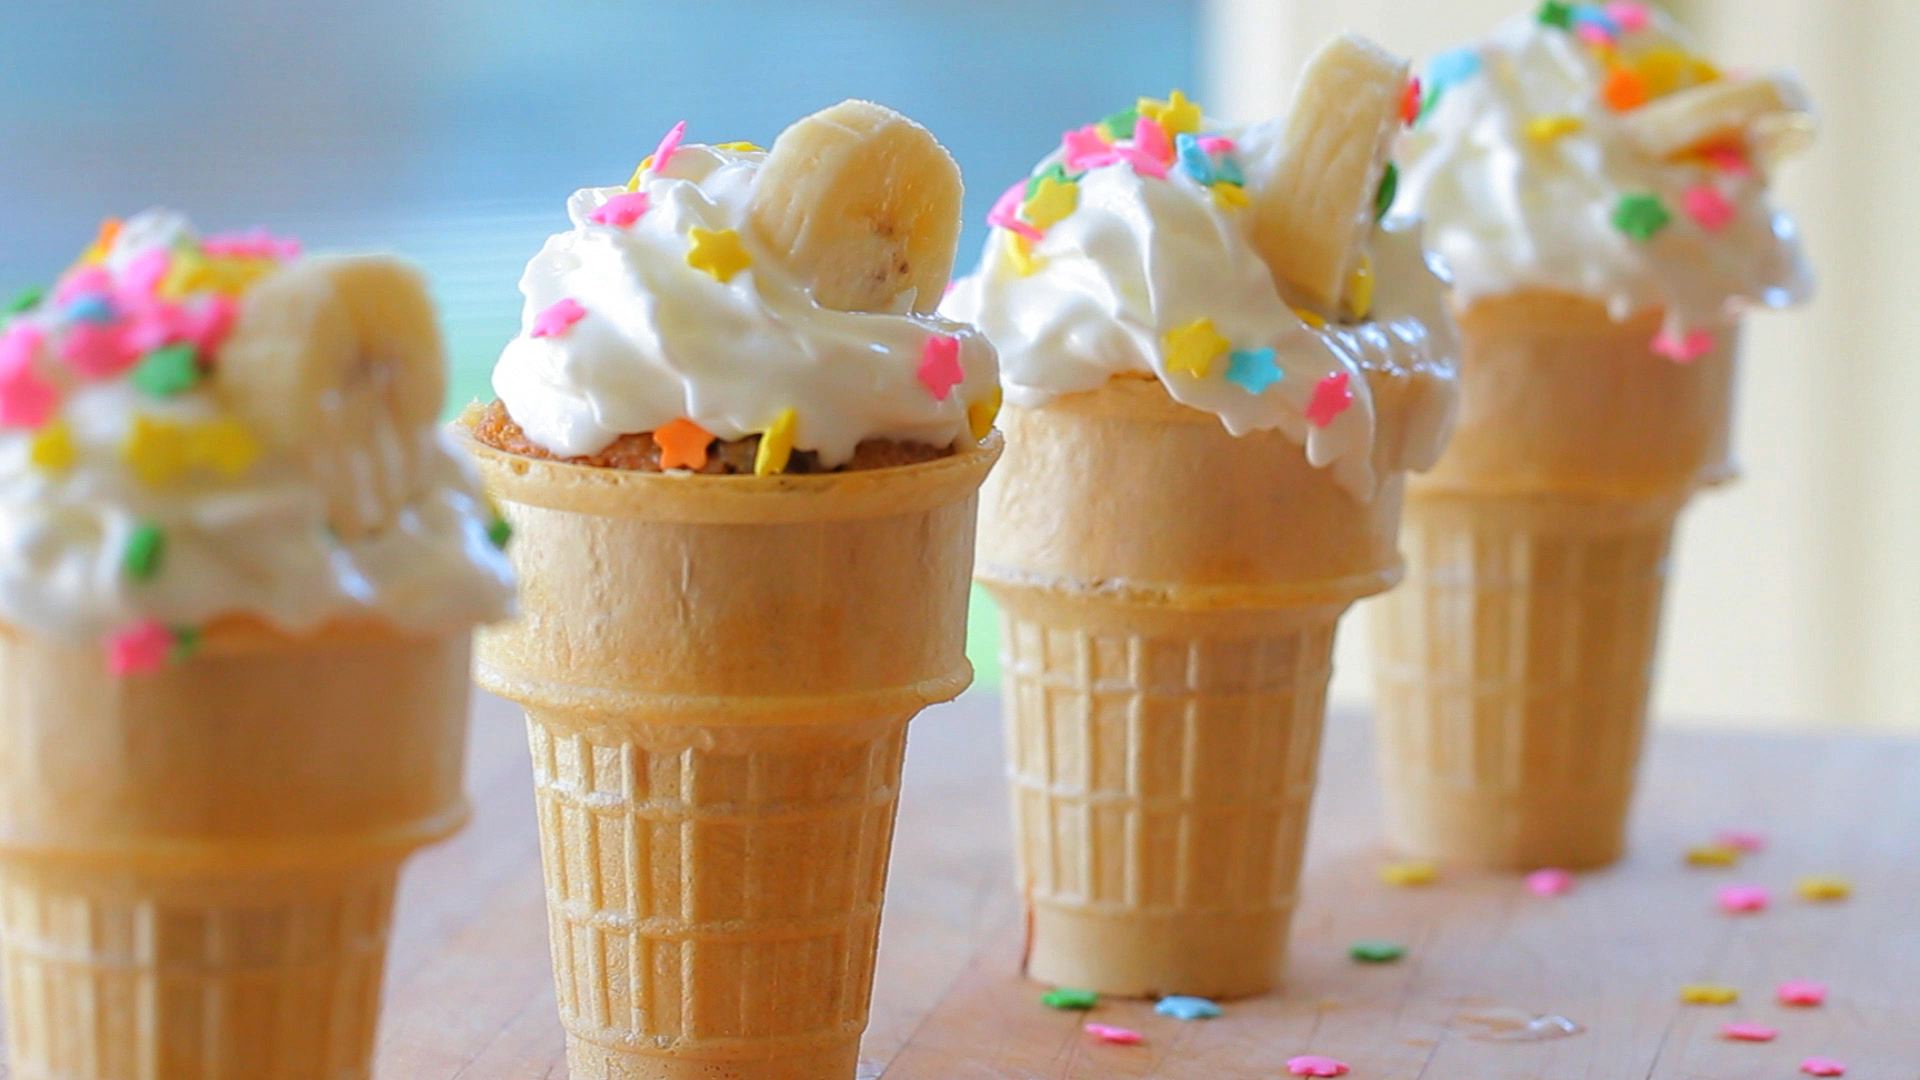 Finti gelati alla banana e cioccolato (icecream cupcakes)